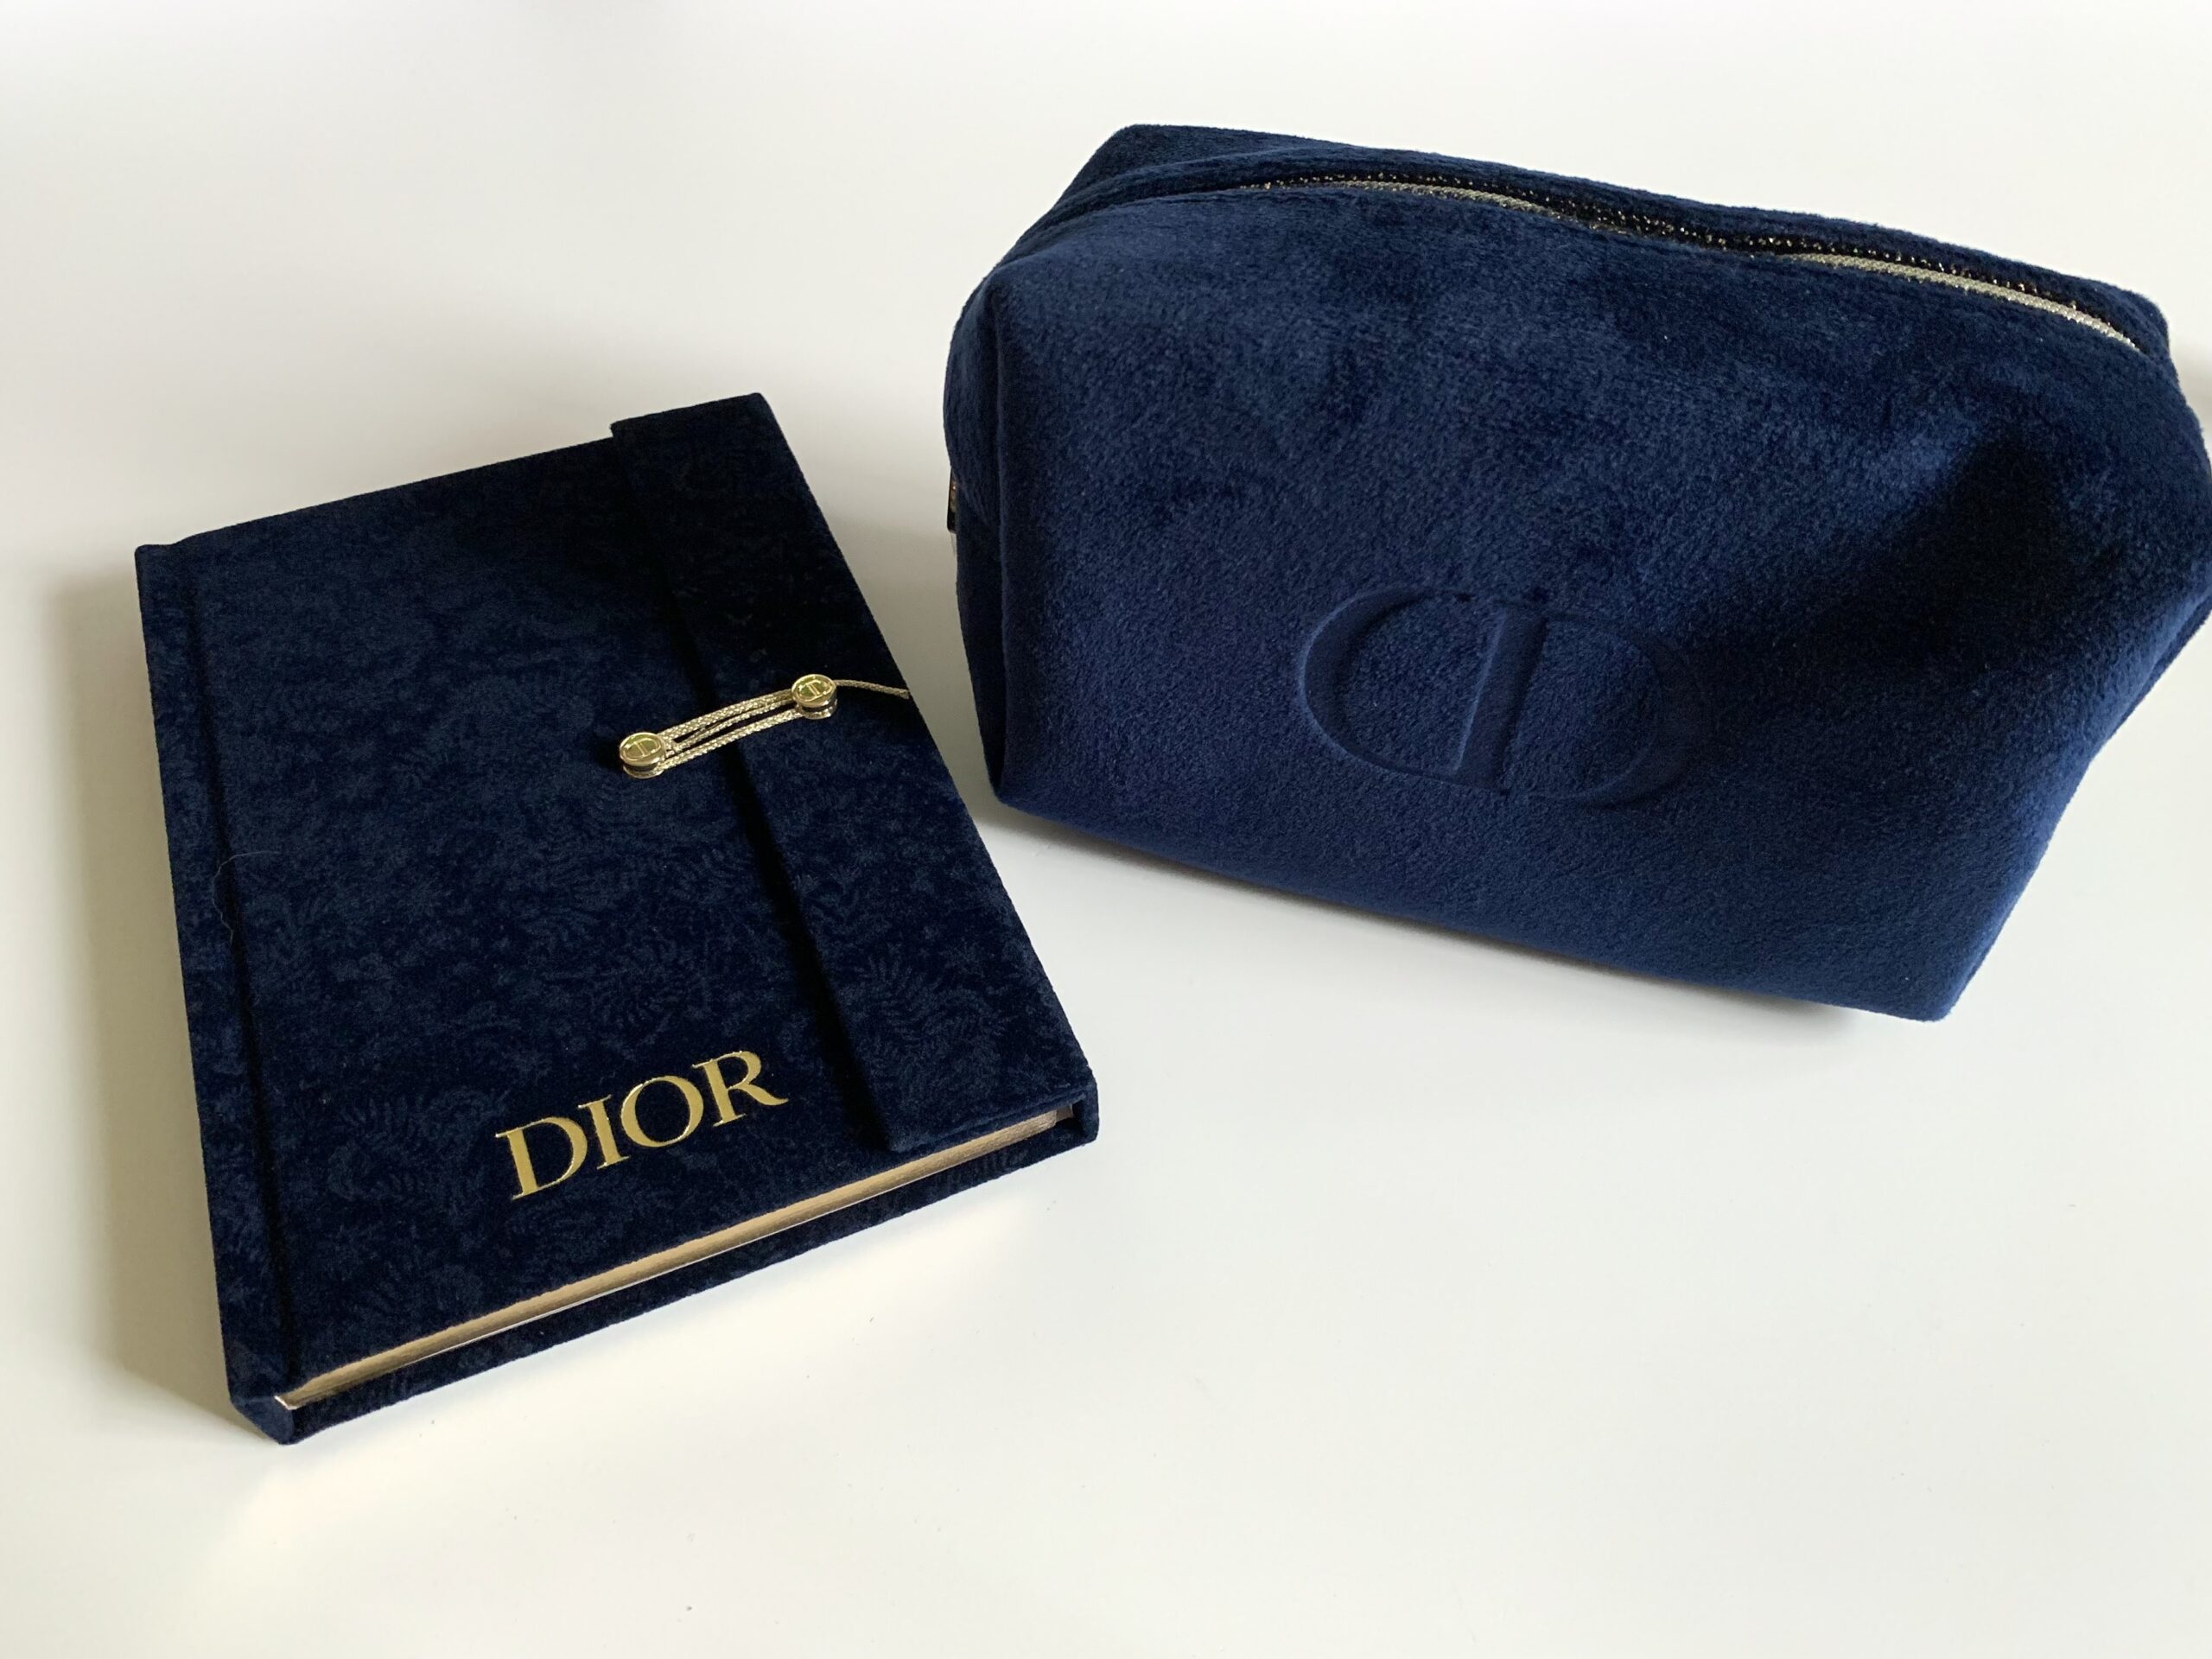 Dior笘�縲�.:�ｼ翫�ｻ繧懊ヮ繝吶Ν繝�繧｣縲�繝弱�ｼ繝医ヶ繝�繧ｯ縲�繧ｻ繝�繝�-